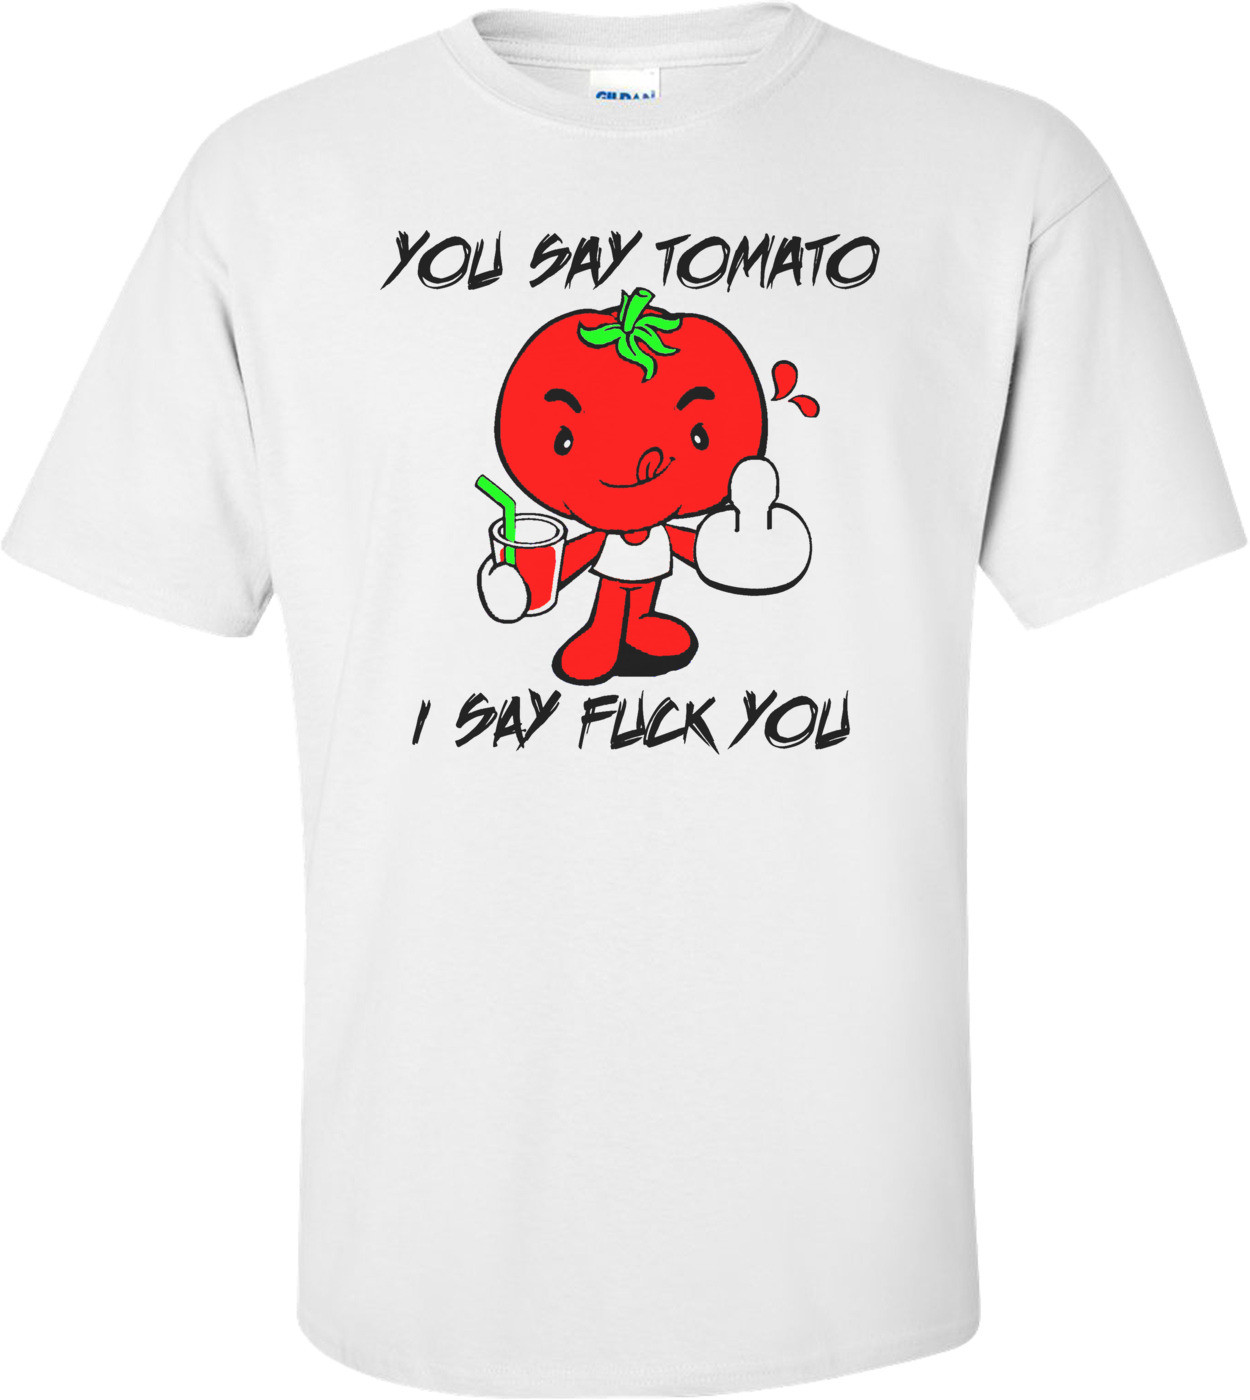 You Say Tomato I Say Fuck You Funny